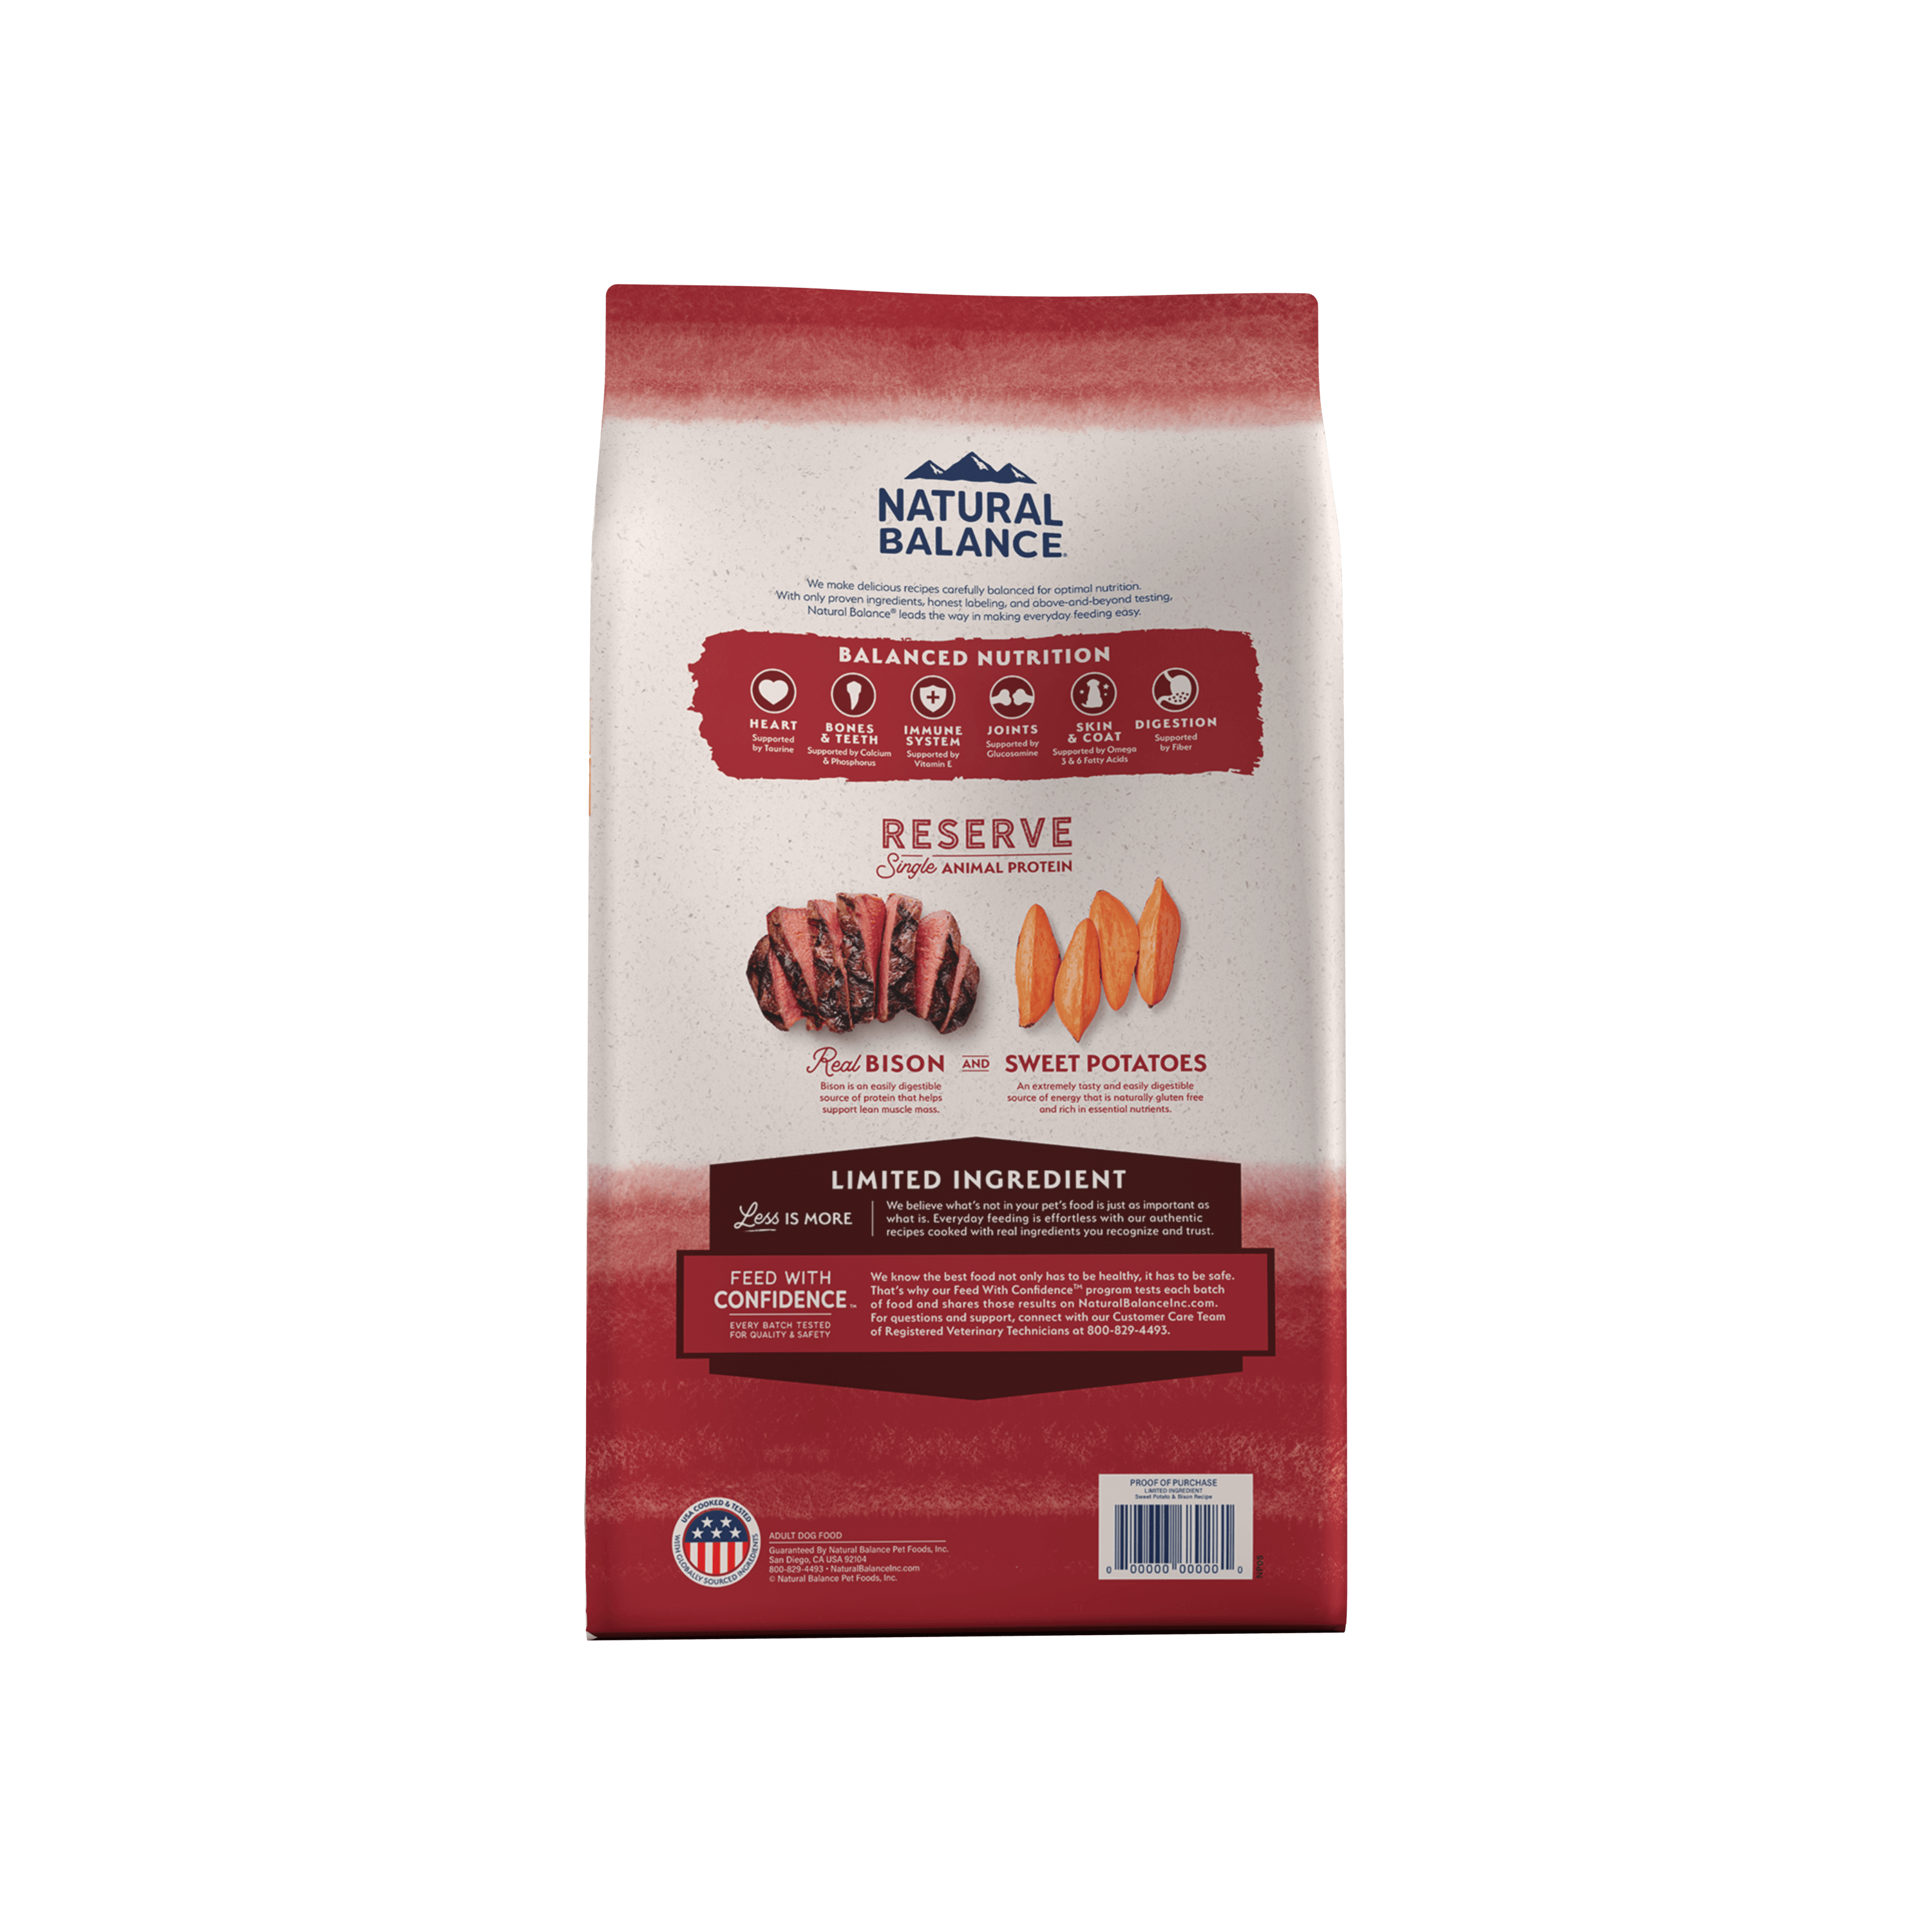 Natural Balance Dog Food Limited Ingredient bison & sweet Potato back of bag